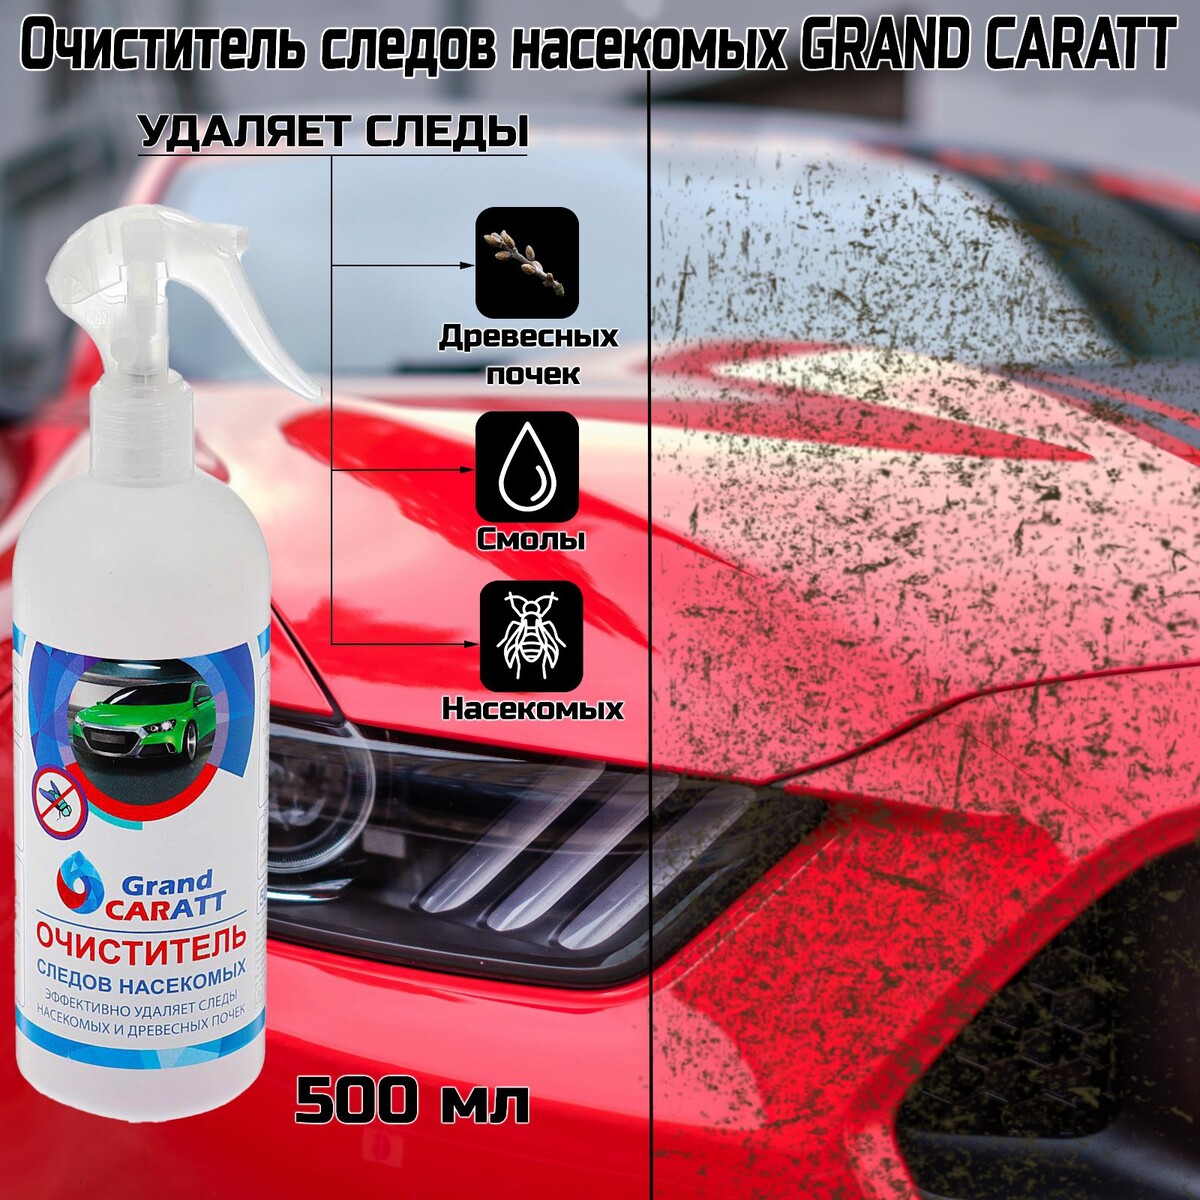 Очиститель следов насекомых grand caratt, 500 мл, триггер smartmi очиститель воздуха air purifier p1